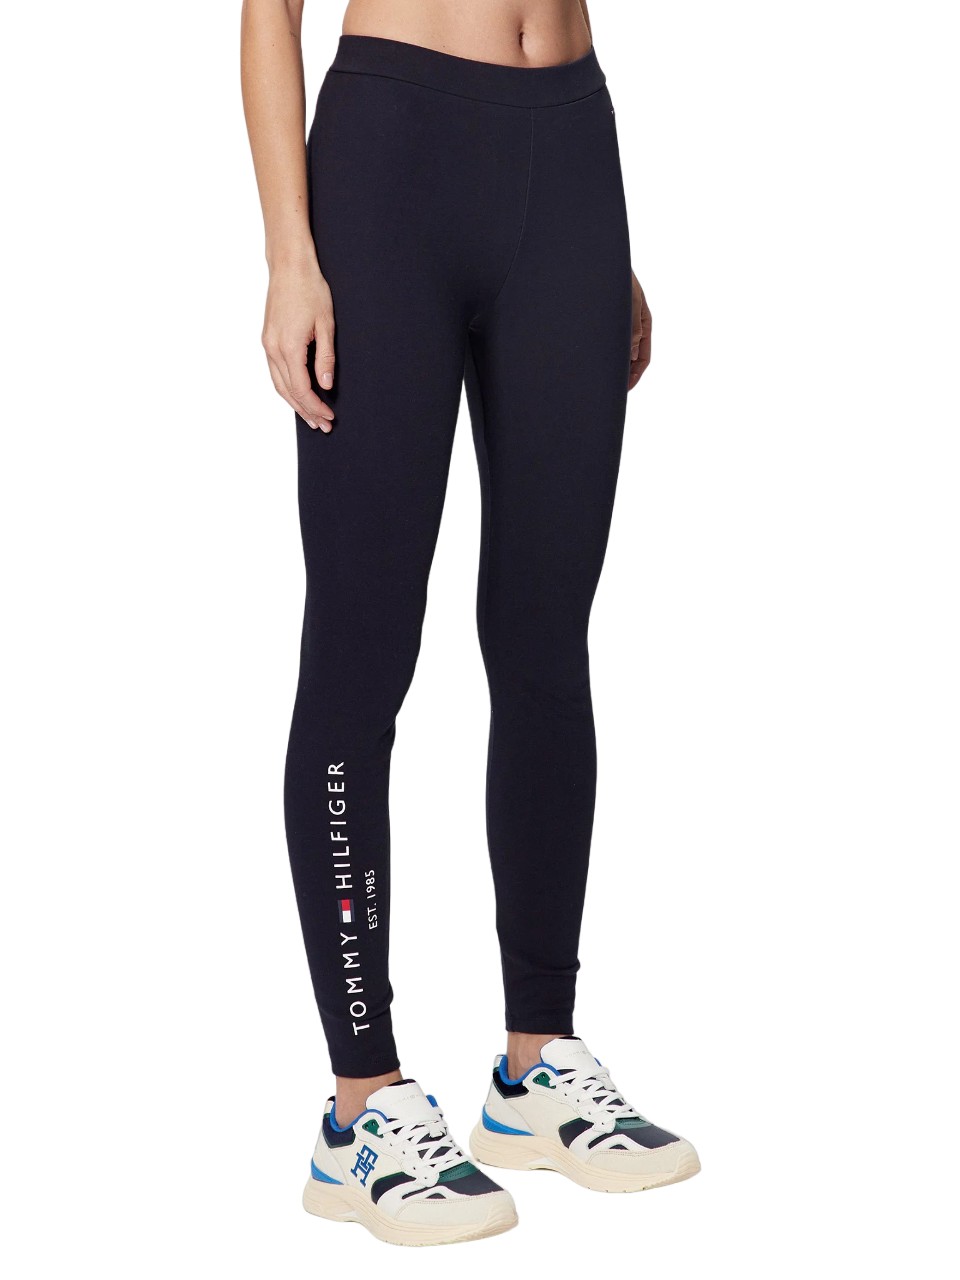 Tommy Hilfiger – sport high rise full length leggings skinny fit – women –  Ofive Egypt